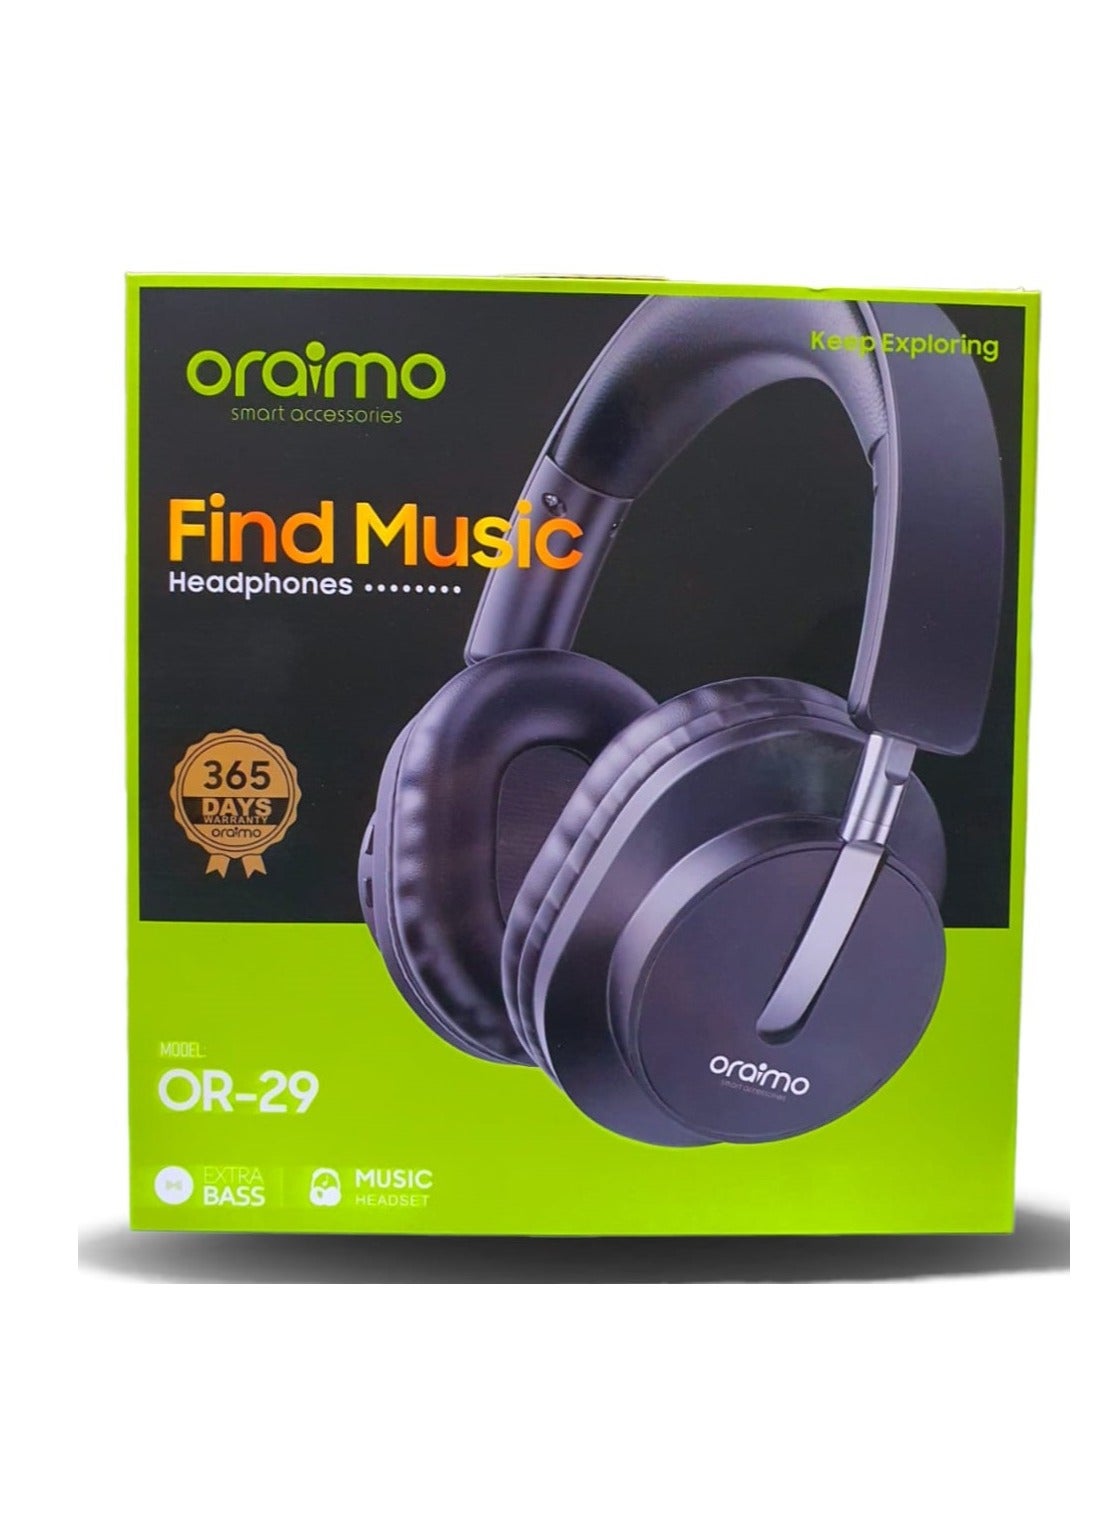 Oraimo Wireless Headphones, Black - Or-29